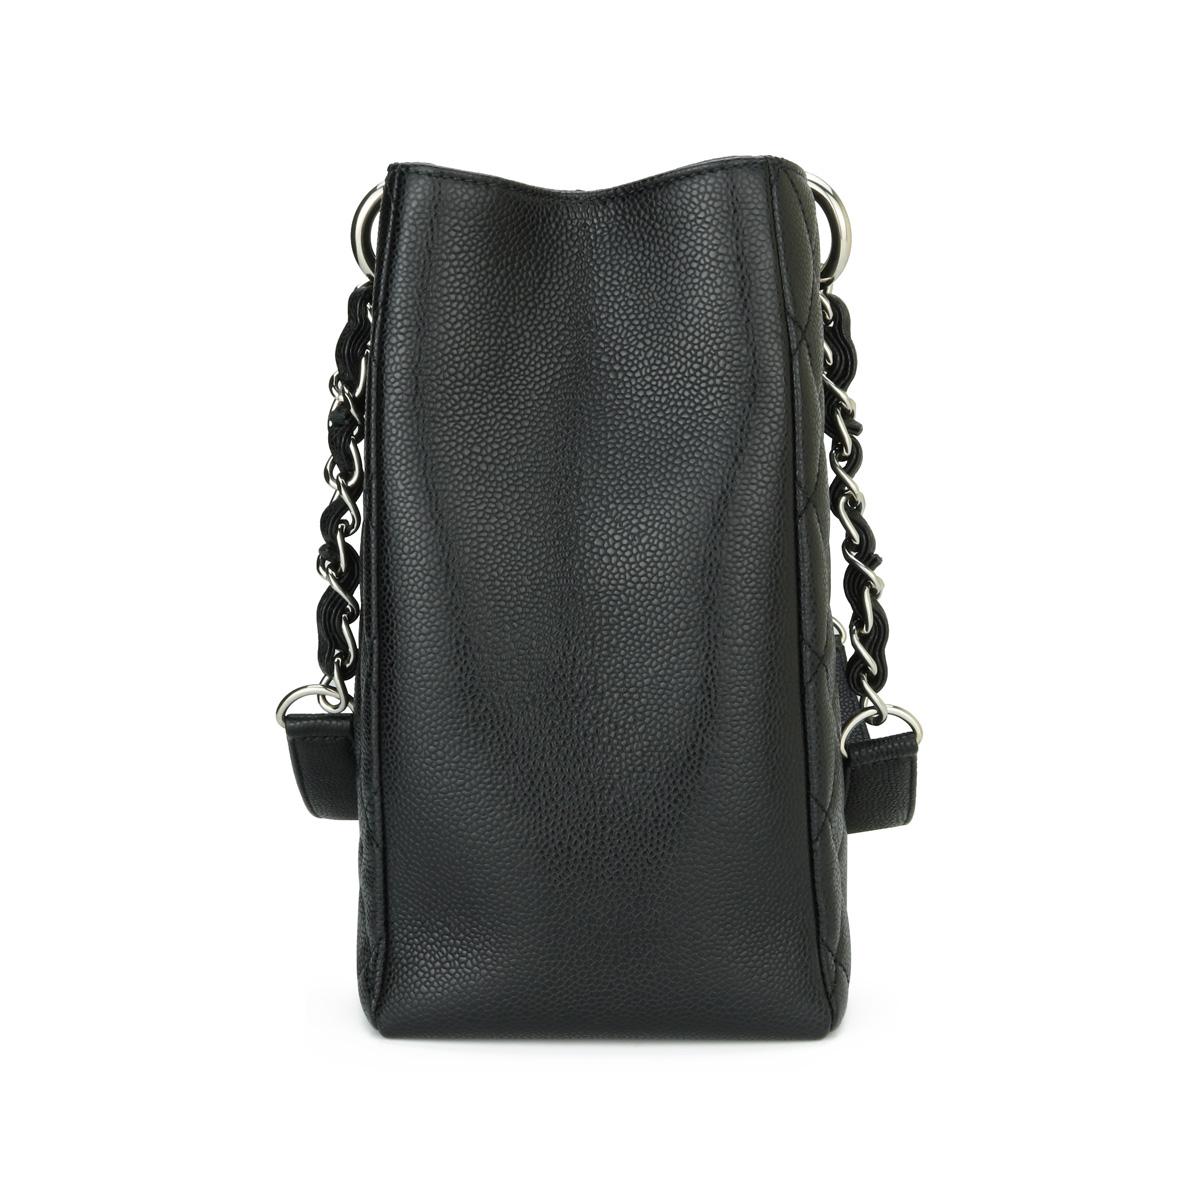 CHANEL Grand Shopping Tote (GST) Tasche in Schwarz und Kaviar mit silberner Hardware 2015 für Damen oder Herren